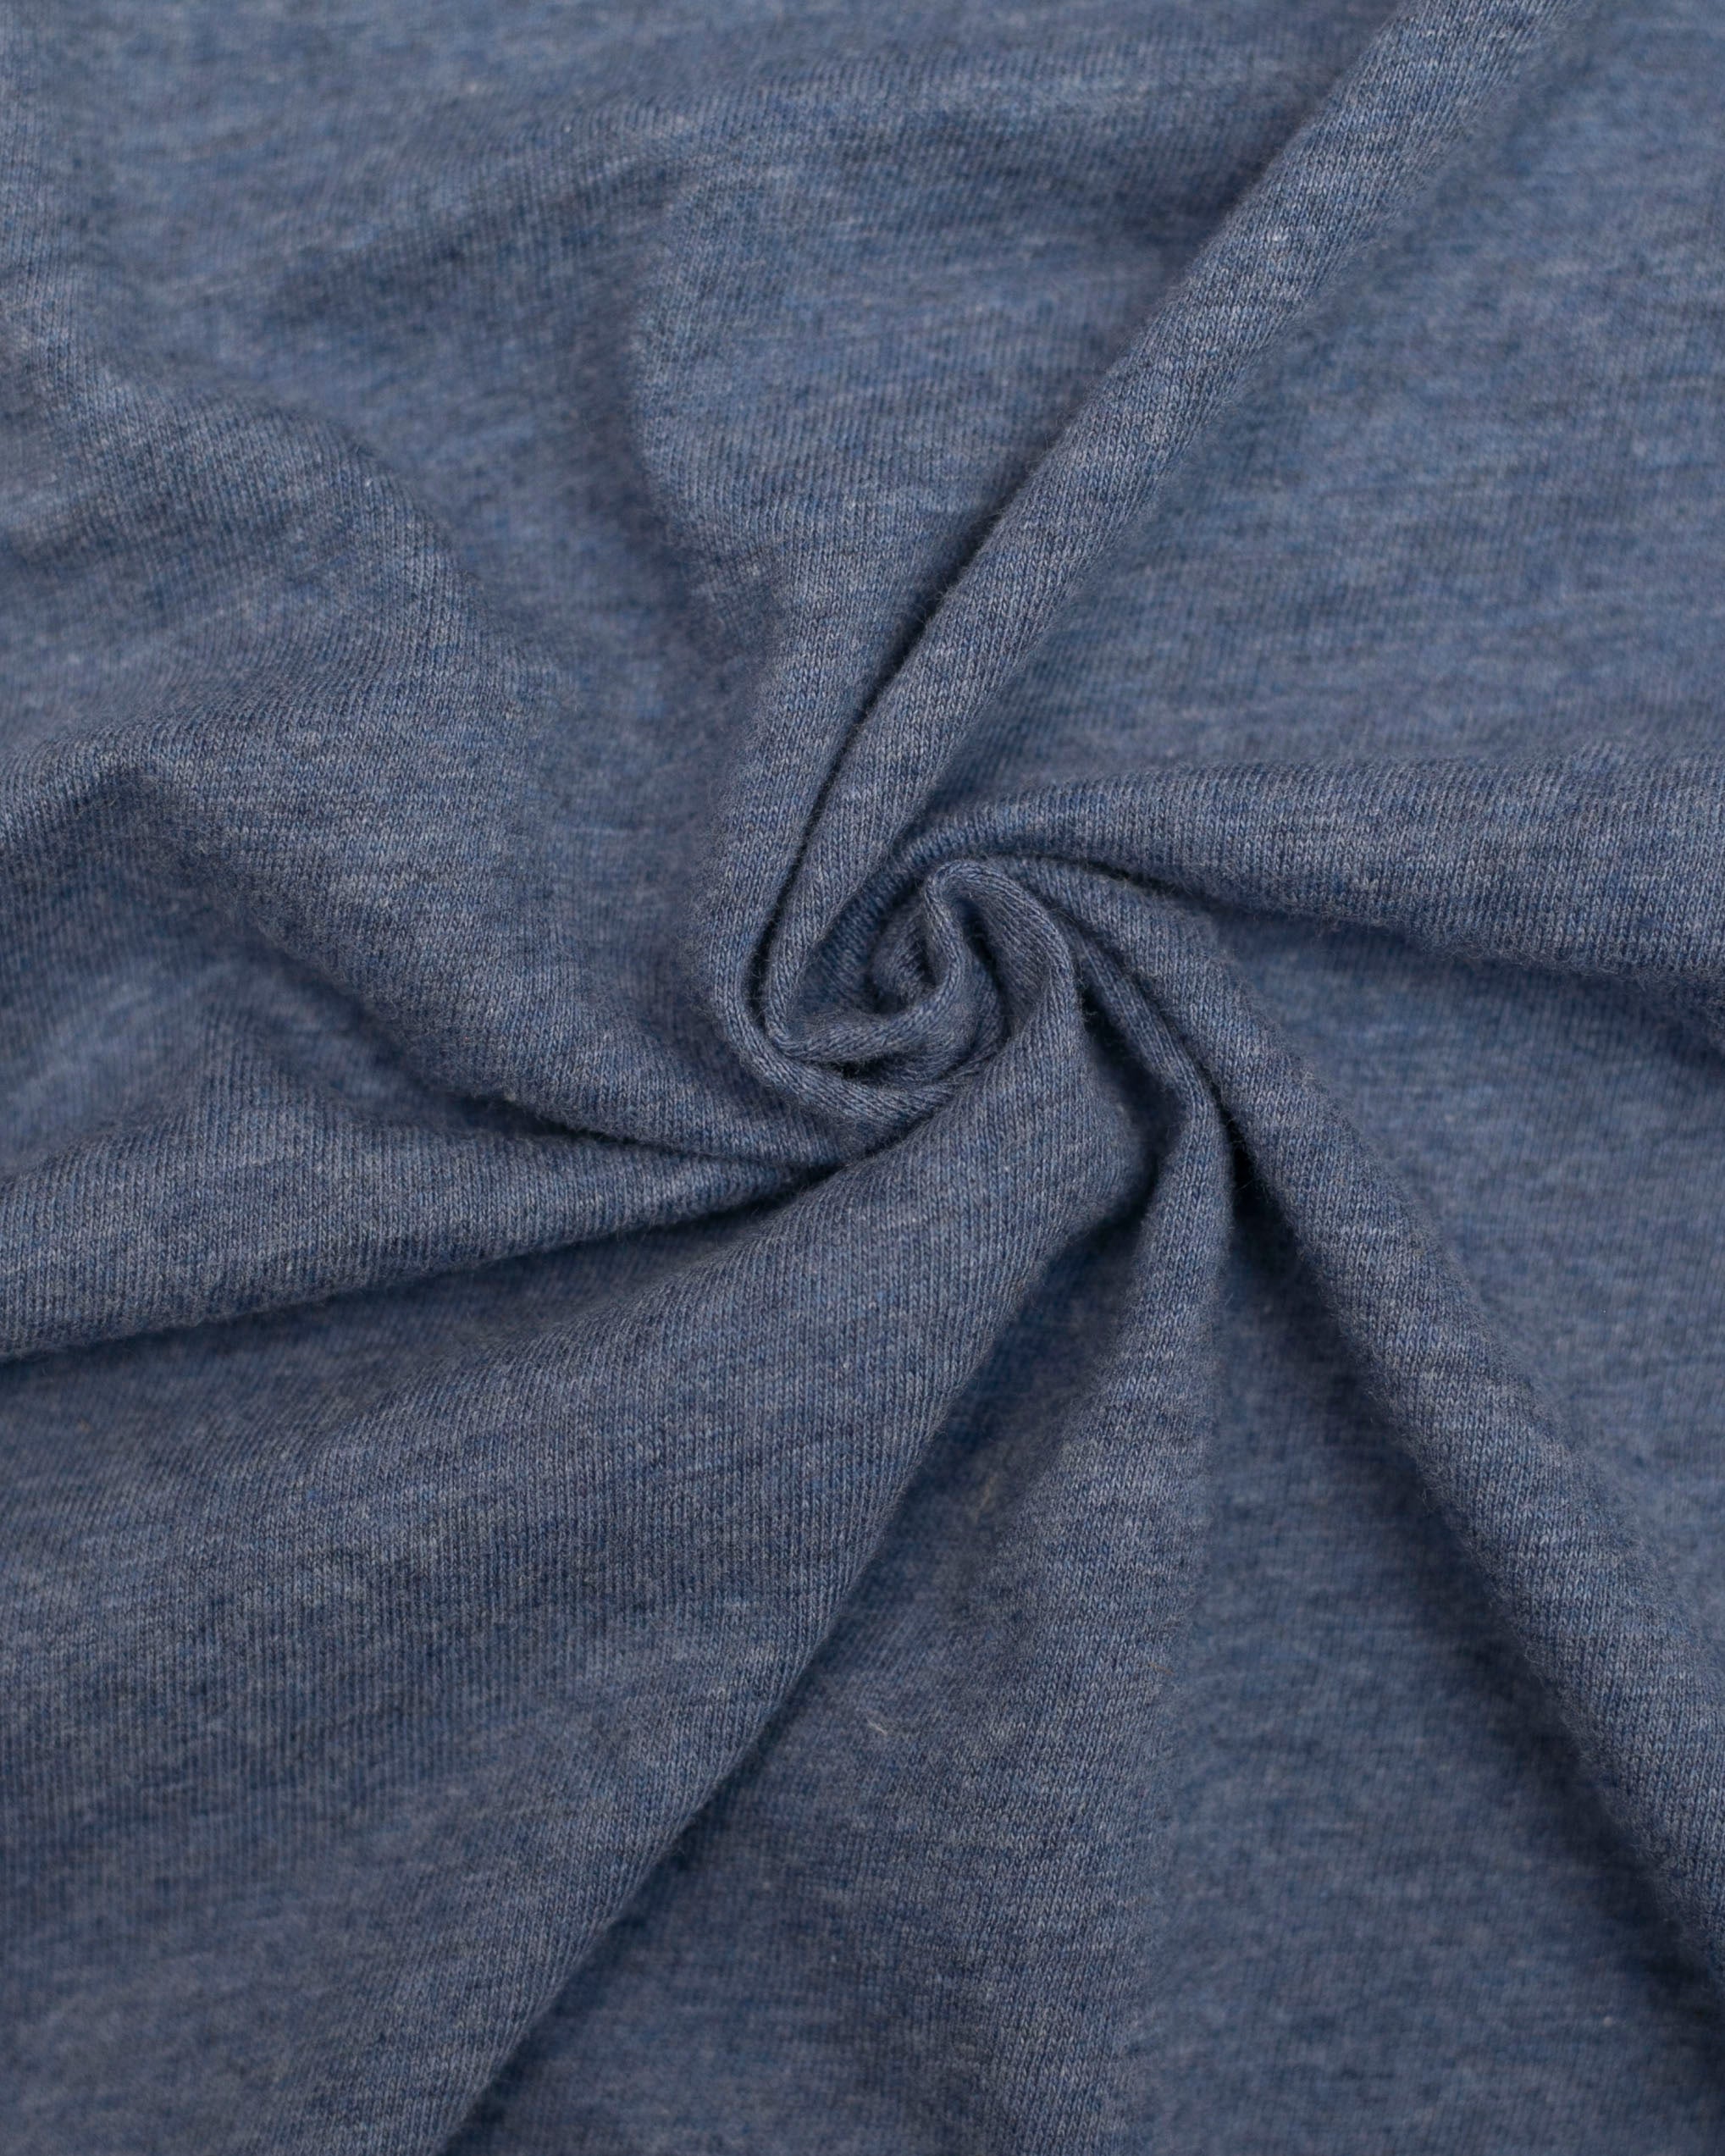 Fabric | Blue Jersey Knit